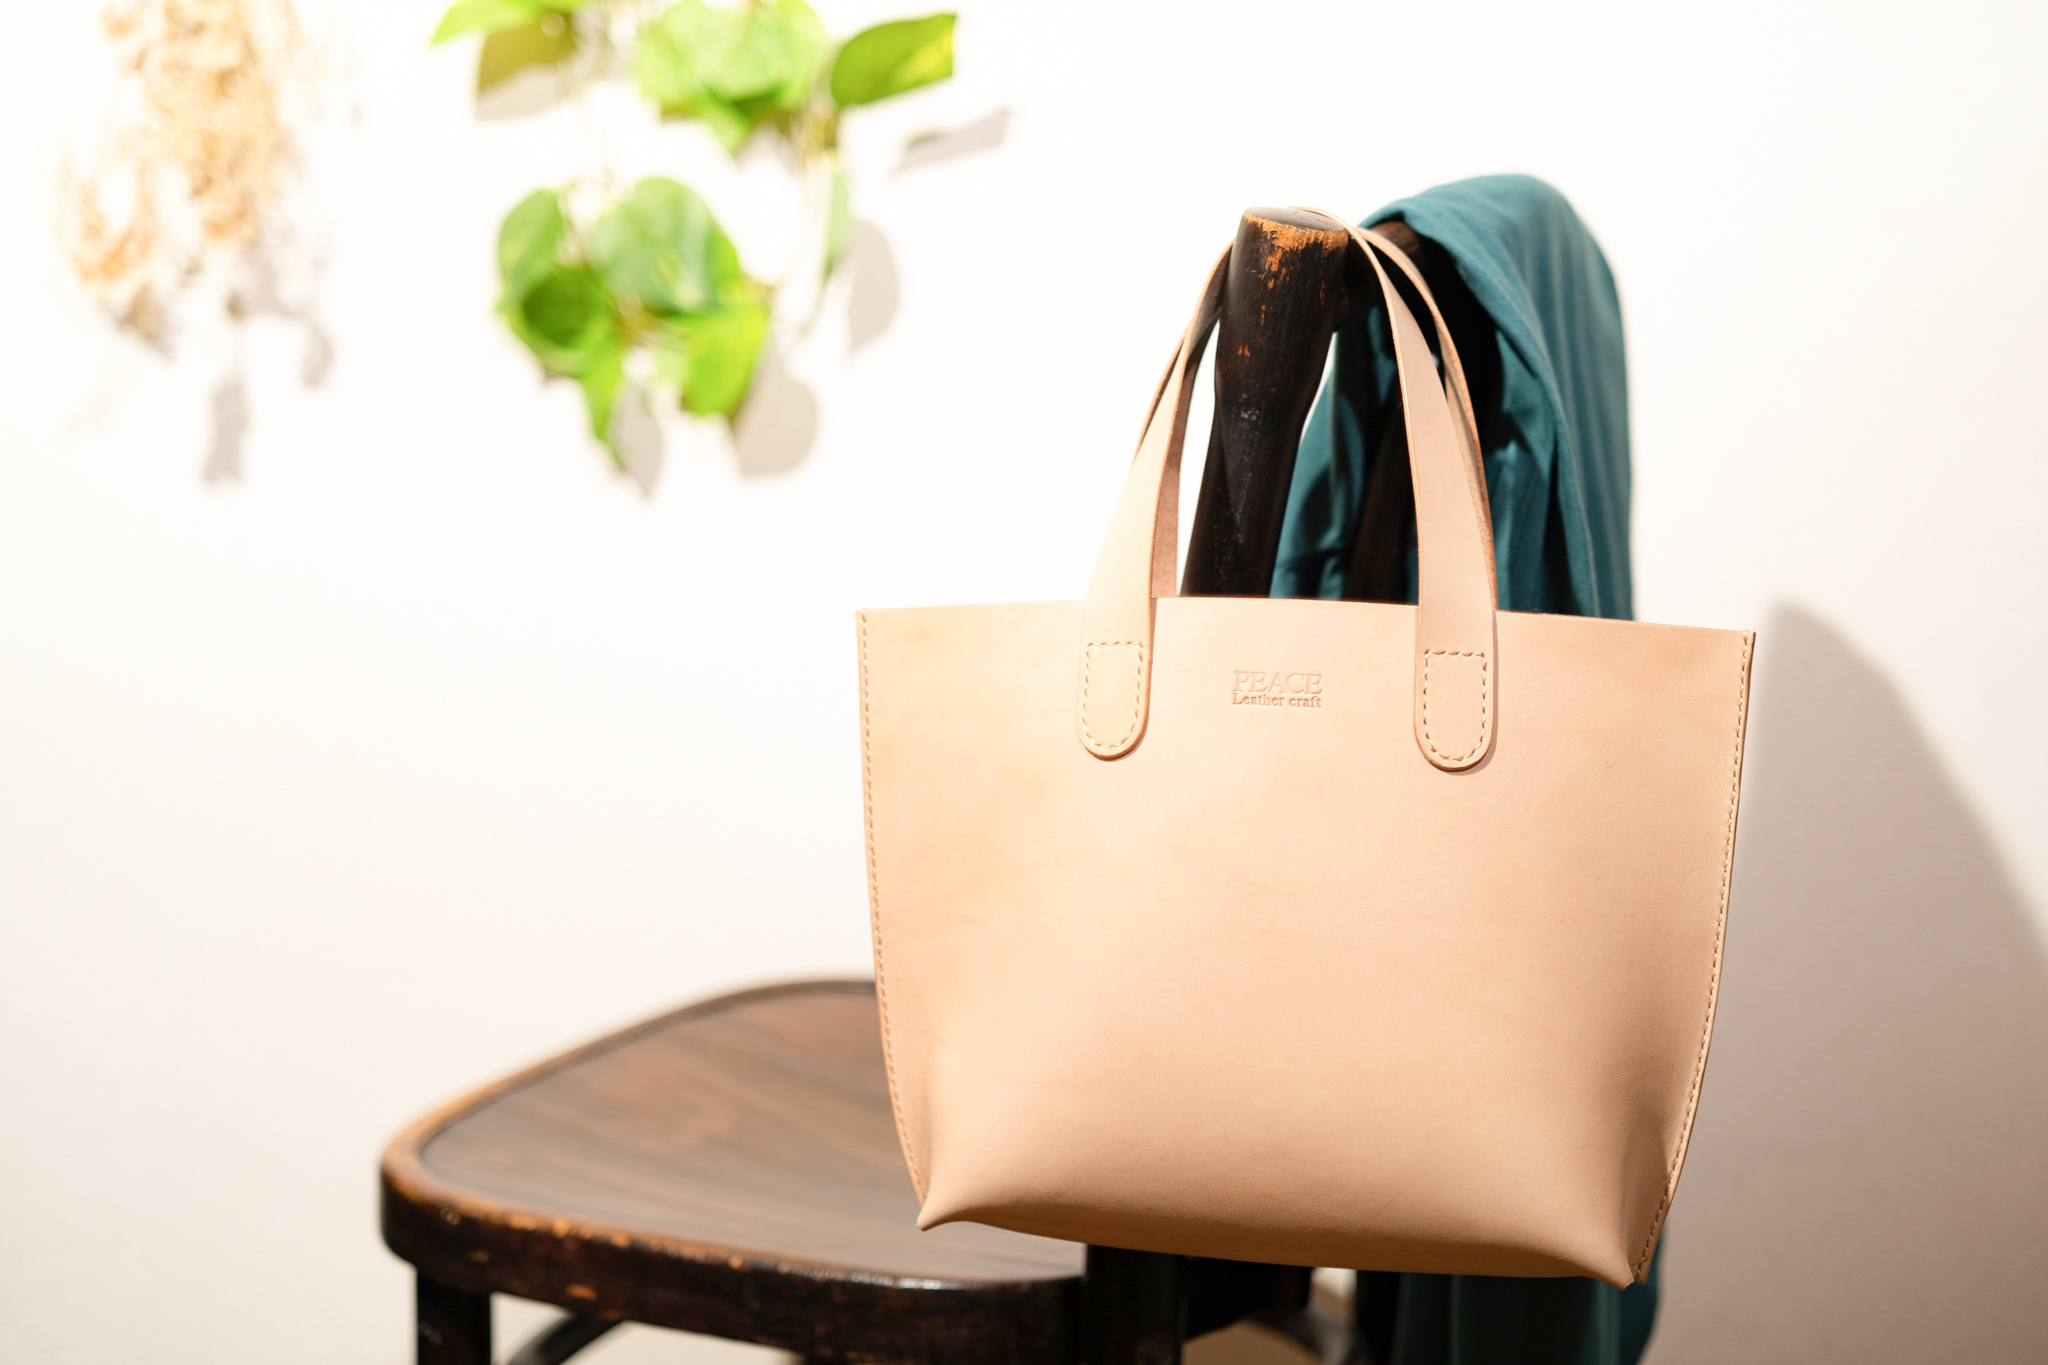 ちょっと買い物に出かけるときにちょうどいいバッグを。ヌメ革のミニトート。